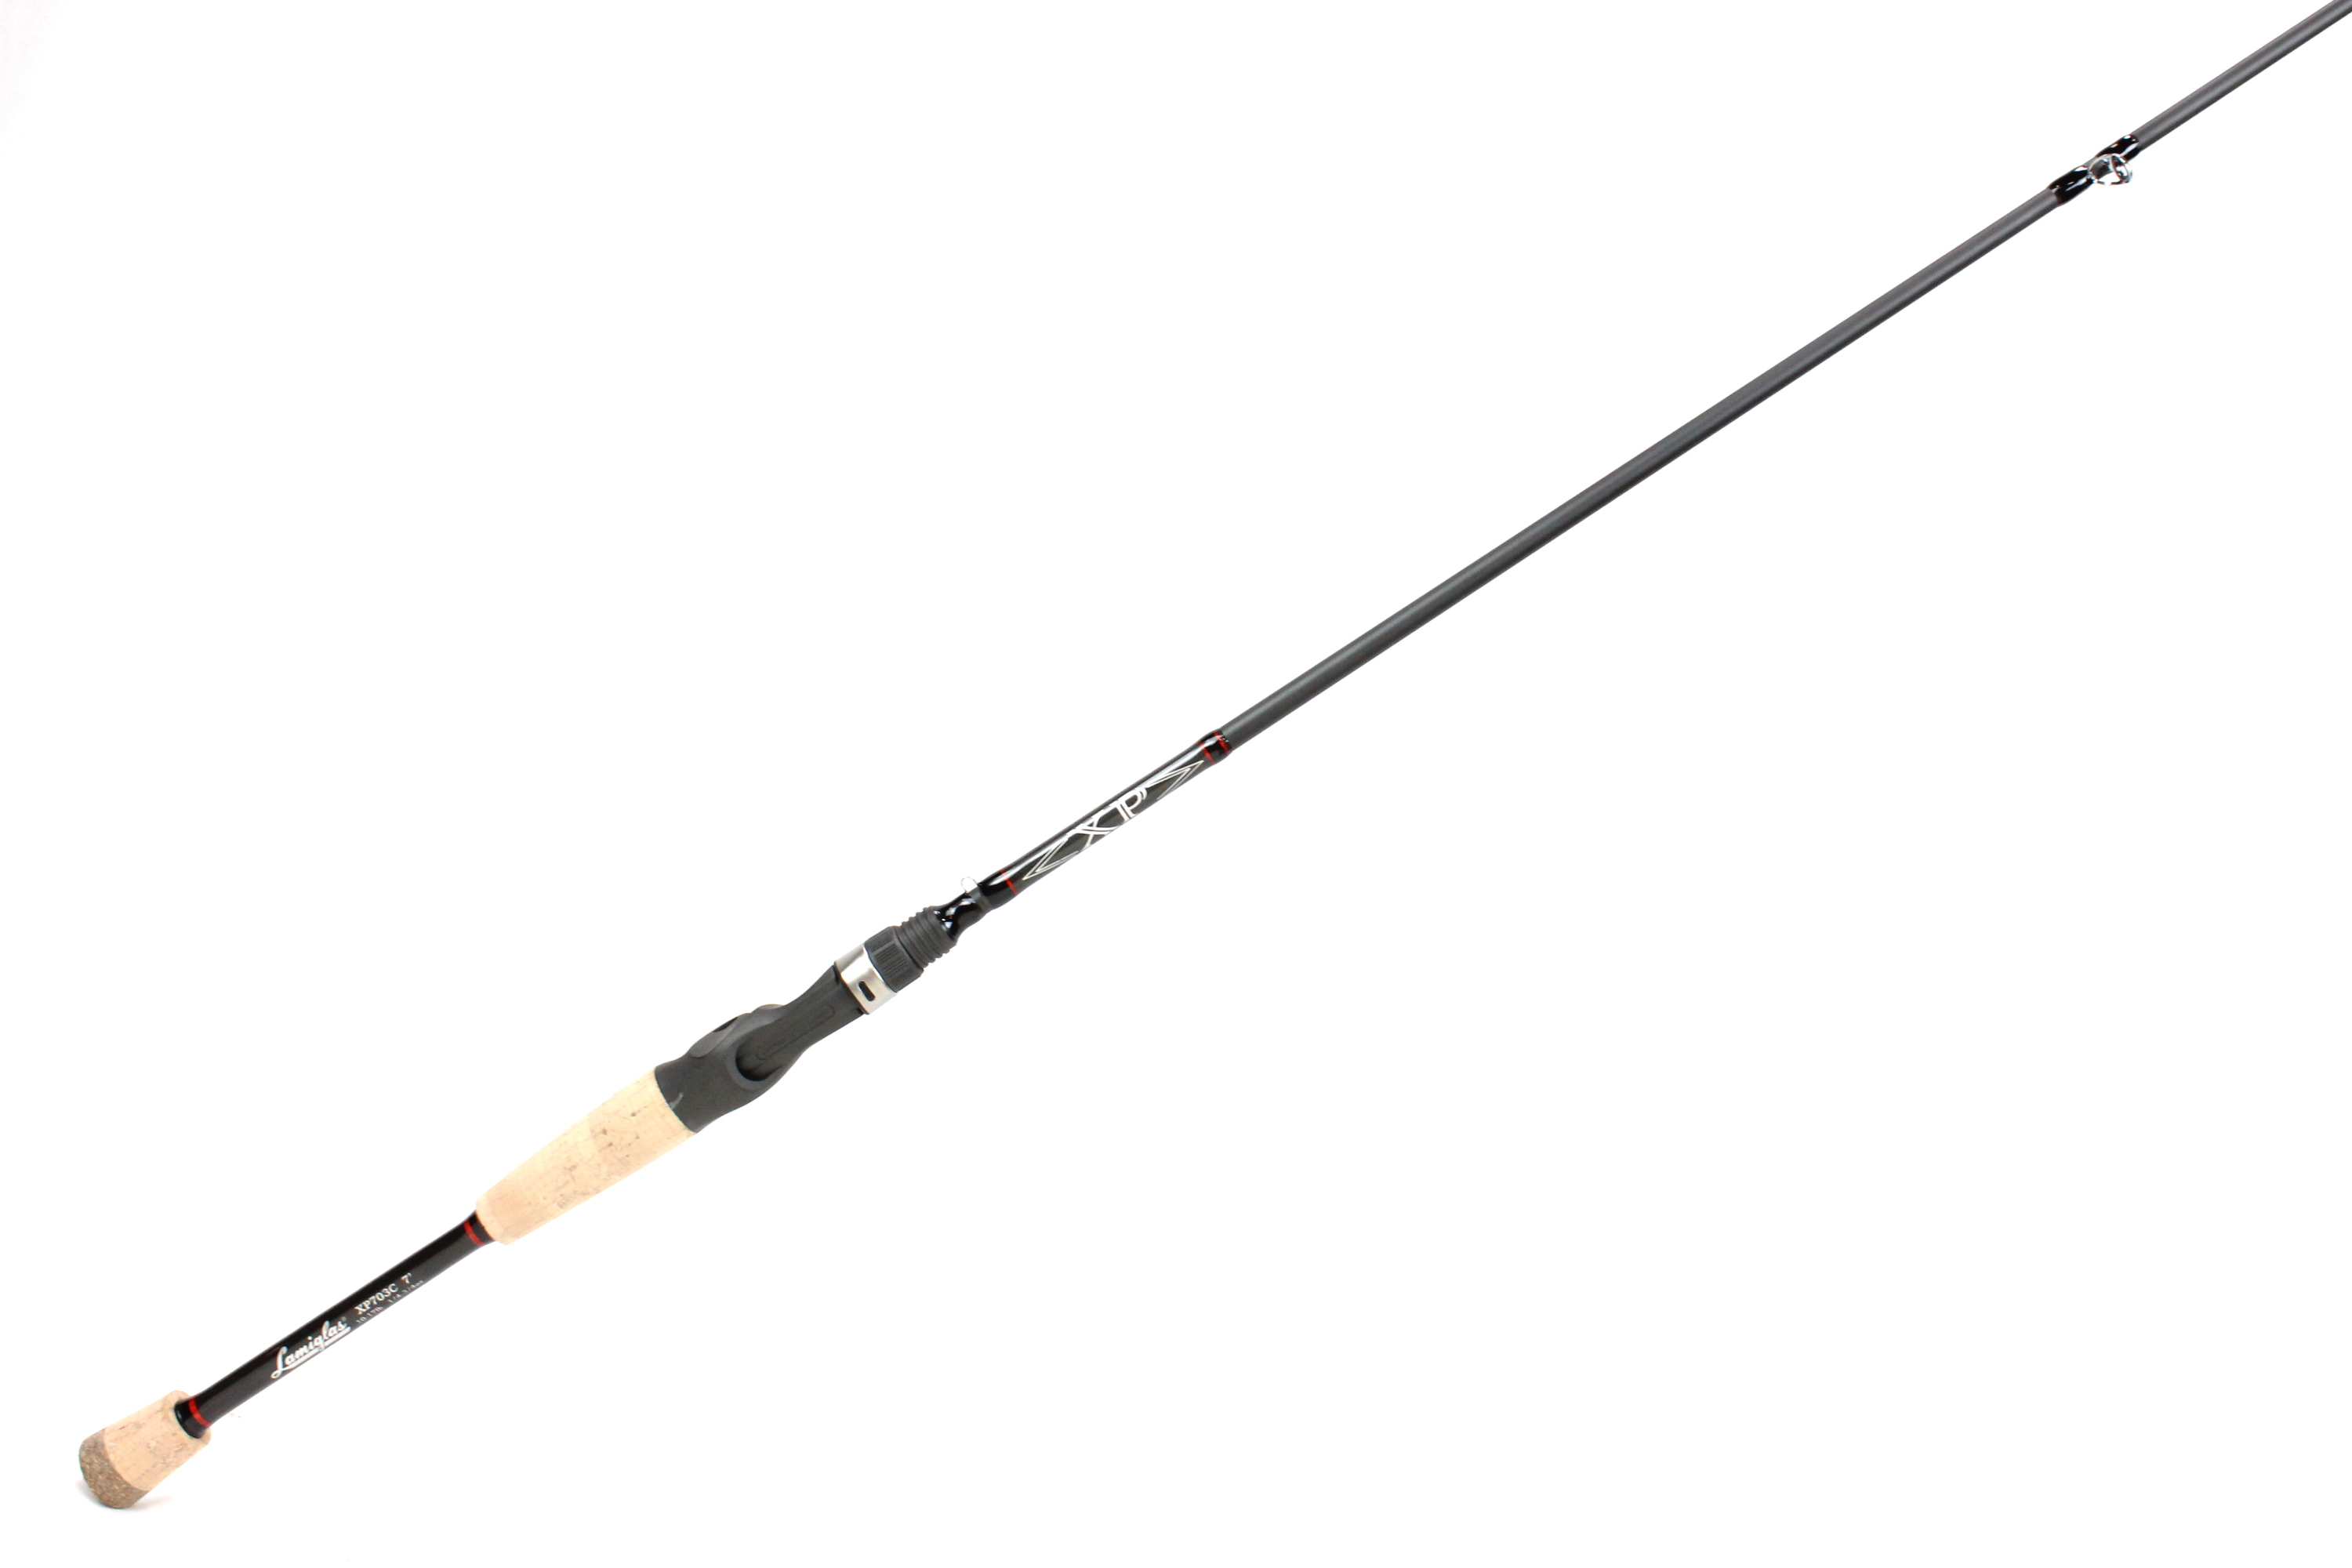 Custom Bass Fishing Rod Spinning Rod, Medium Light, Fast Action, 7' Rod 